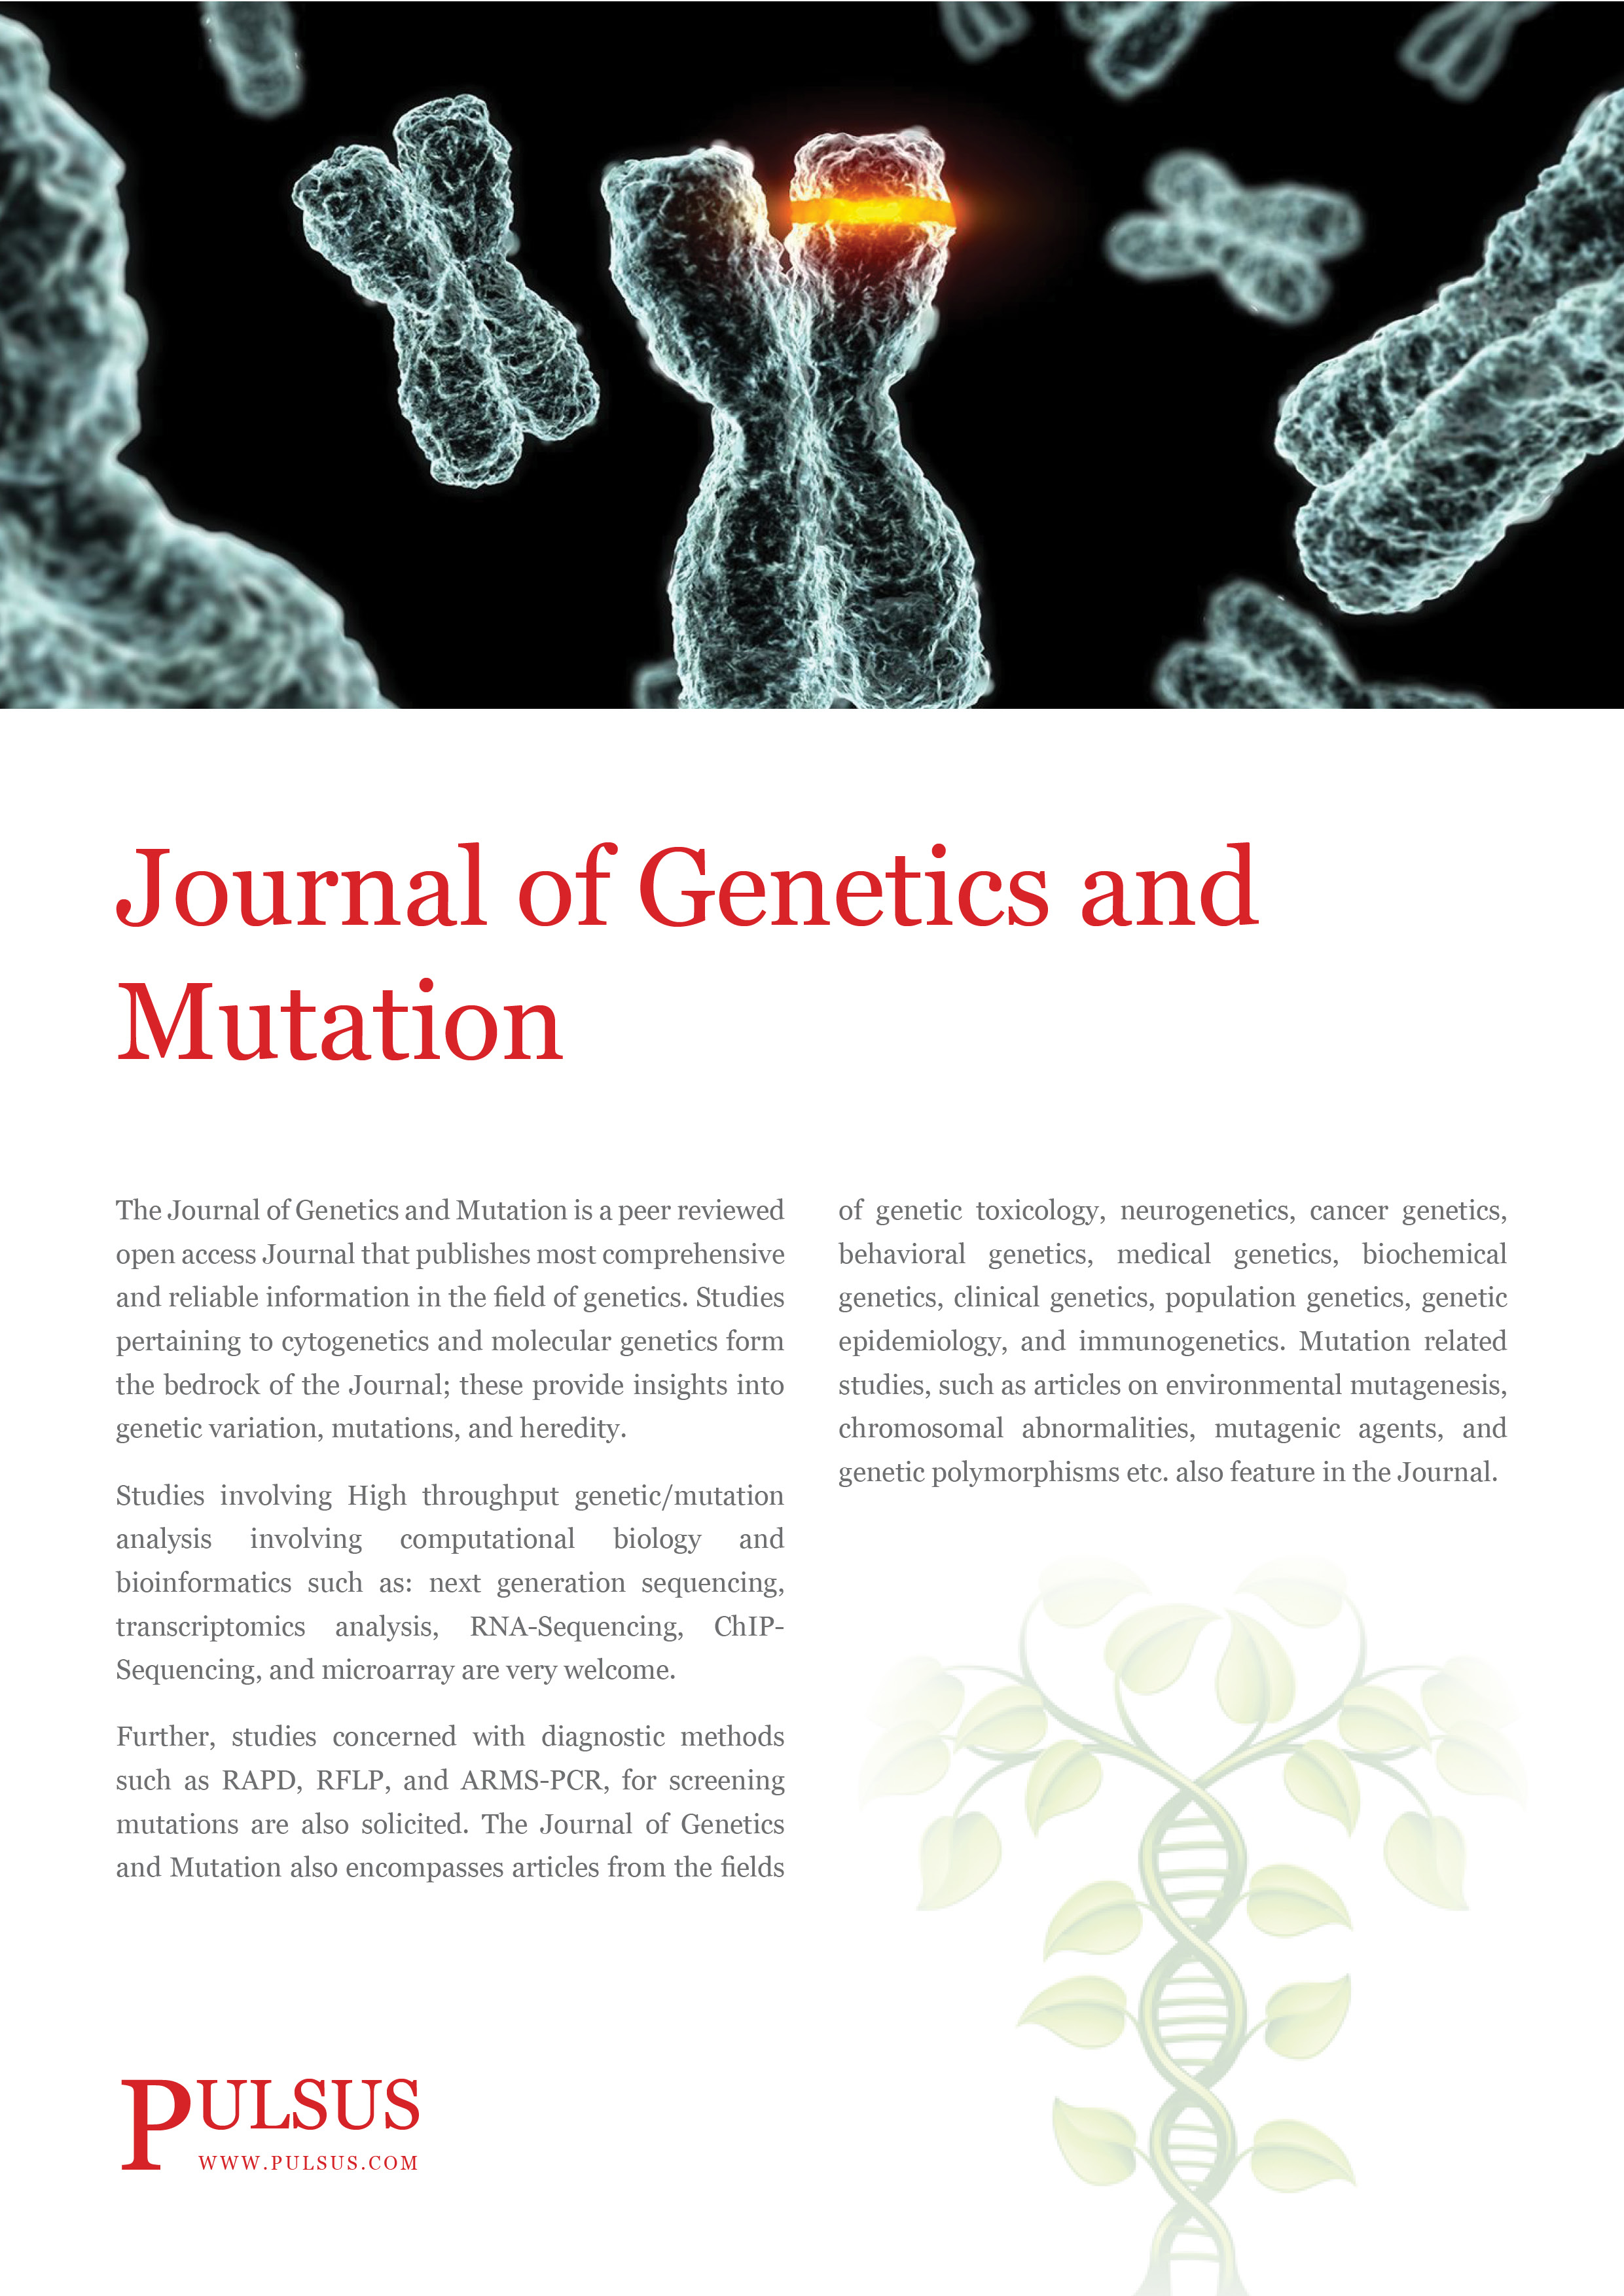 Revista de genética y mutación.